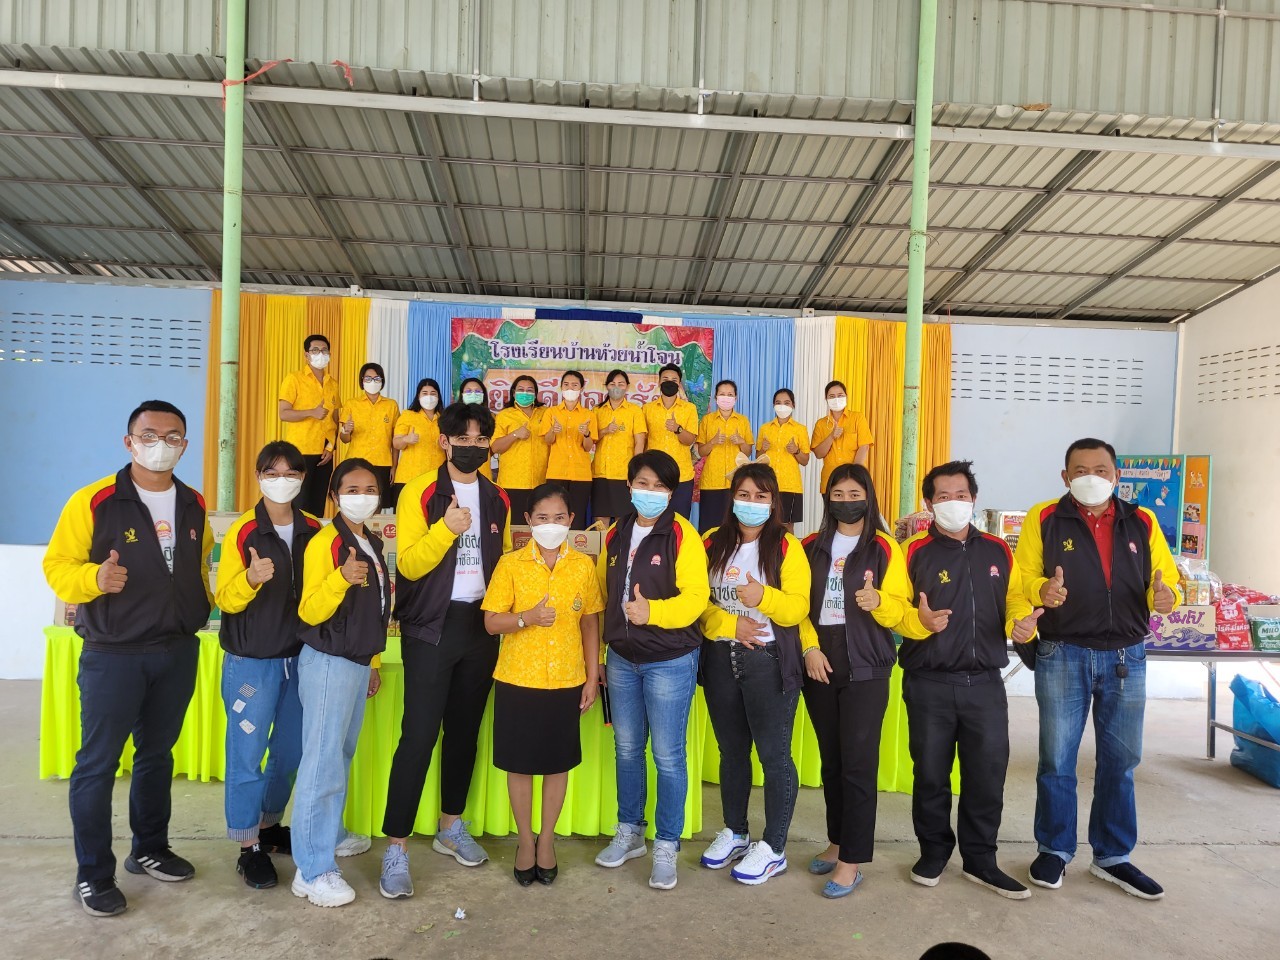  โครงการ “GIVE BACK” เติมเต็มความสุขให้น้อง ครั้งที่ 8 ณ โรงเรียนห้วยน้ำโจน จ.กาญจนบุรี